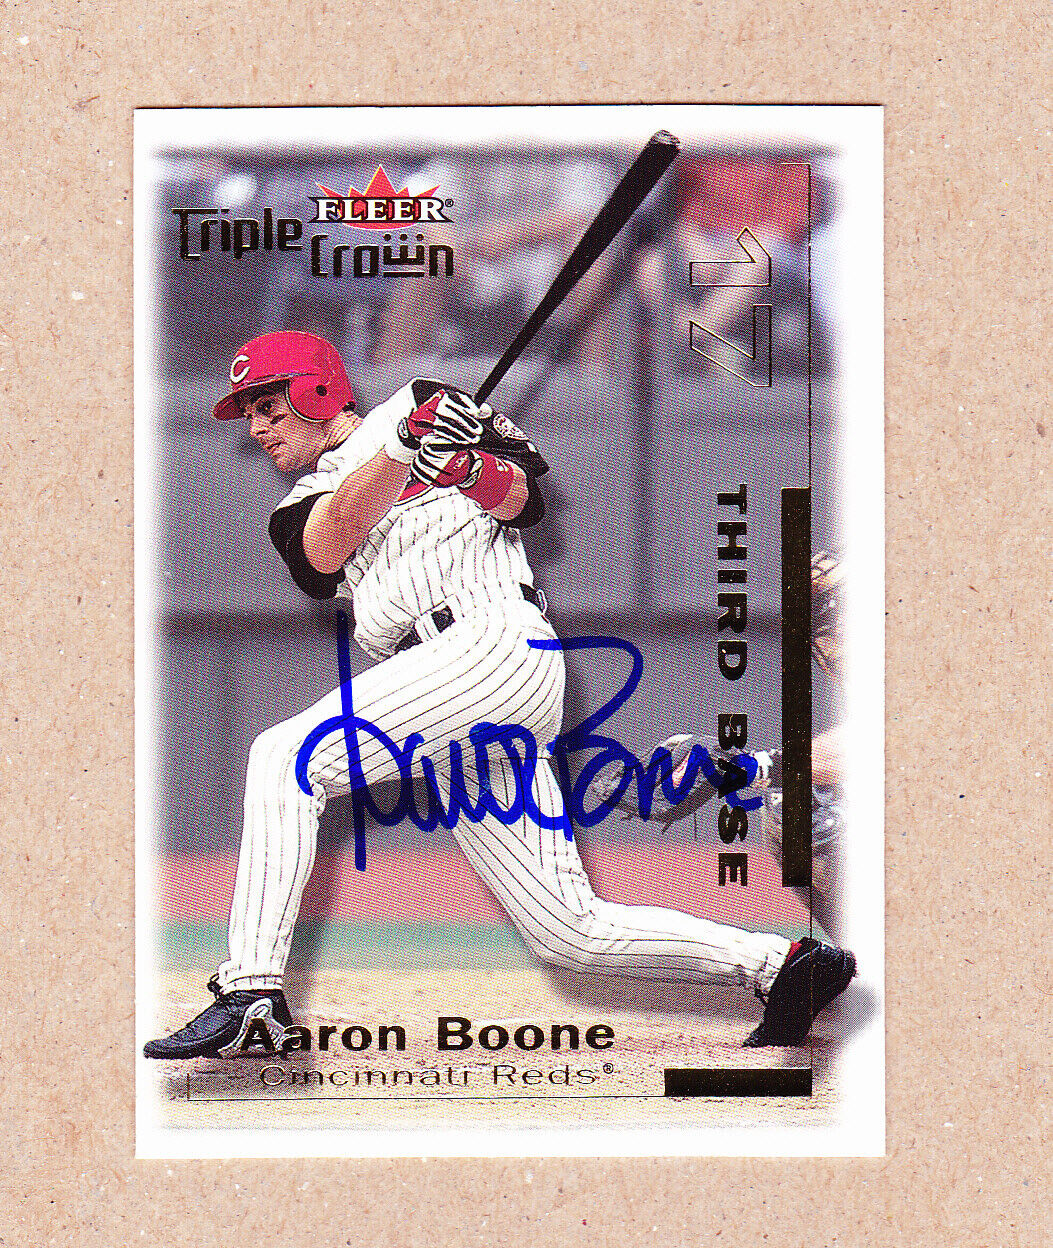 Aaron Boone signed 2001 Fleer Triple Crown card #175-Cincinnati Reds